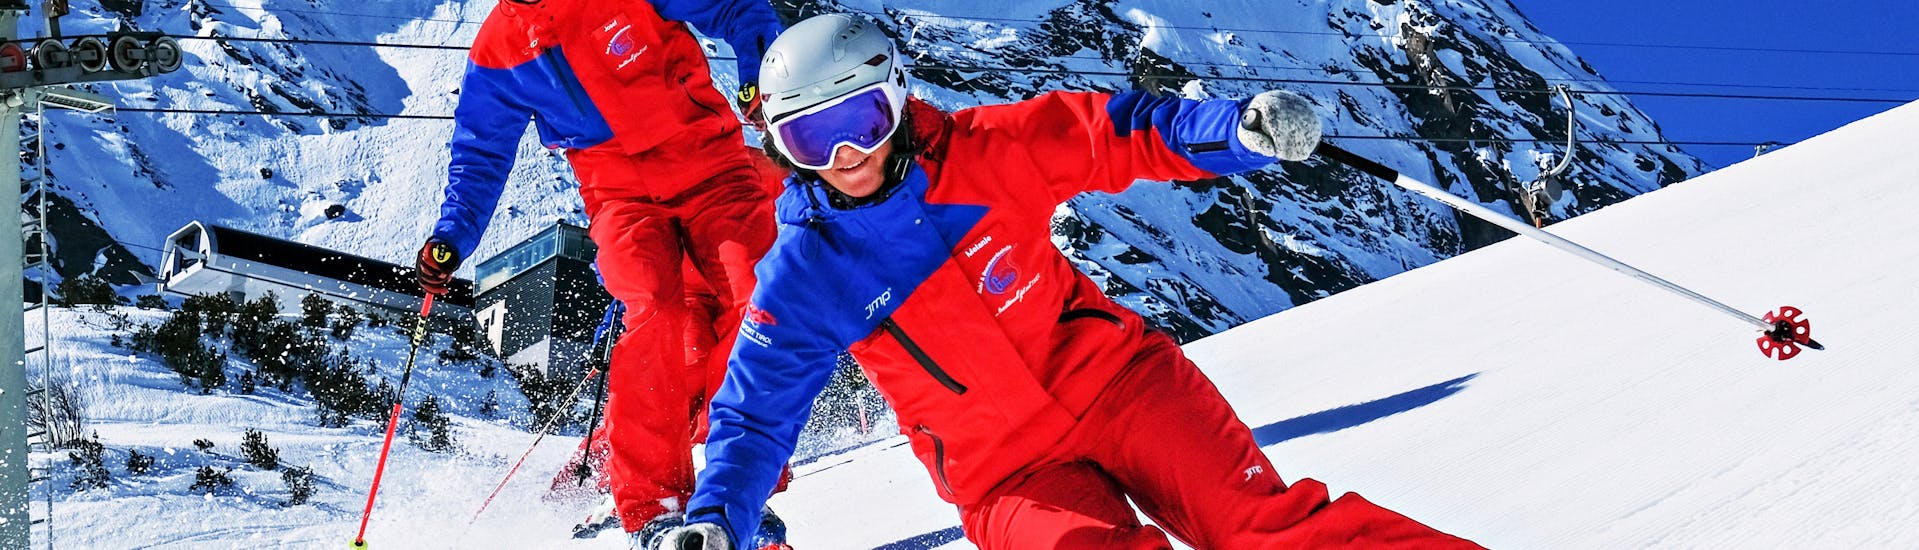 Clases de esquí para adultos para principiantes.